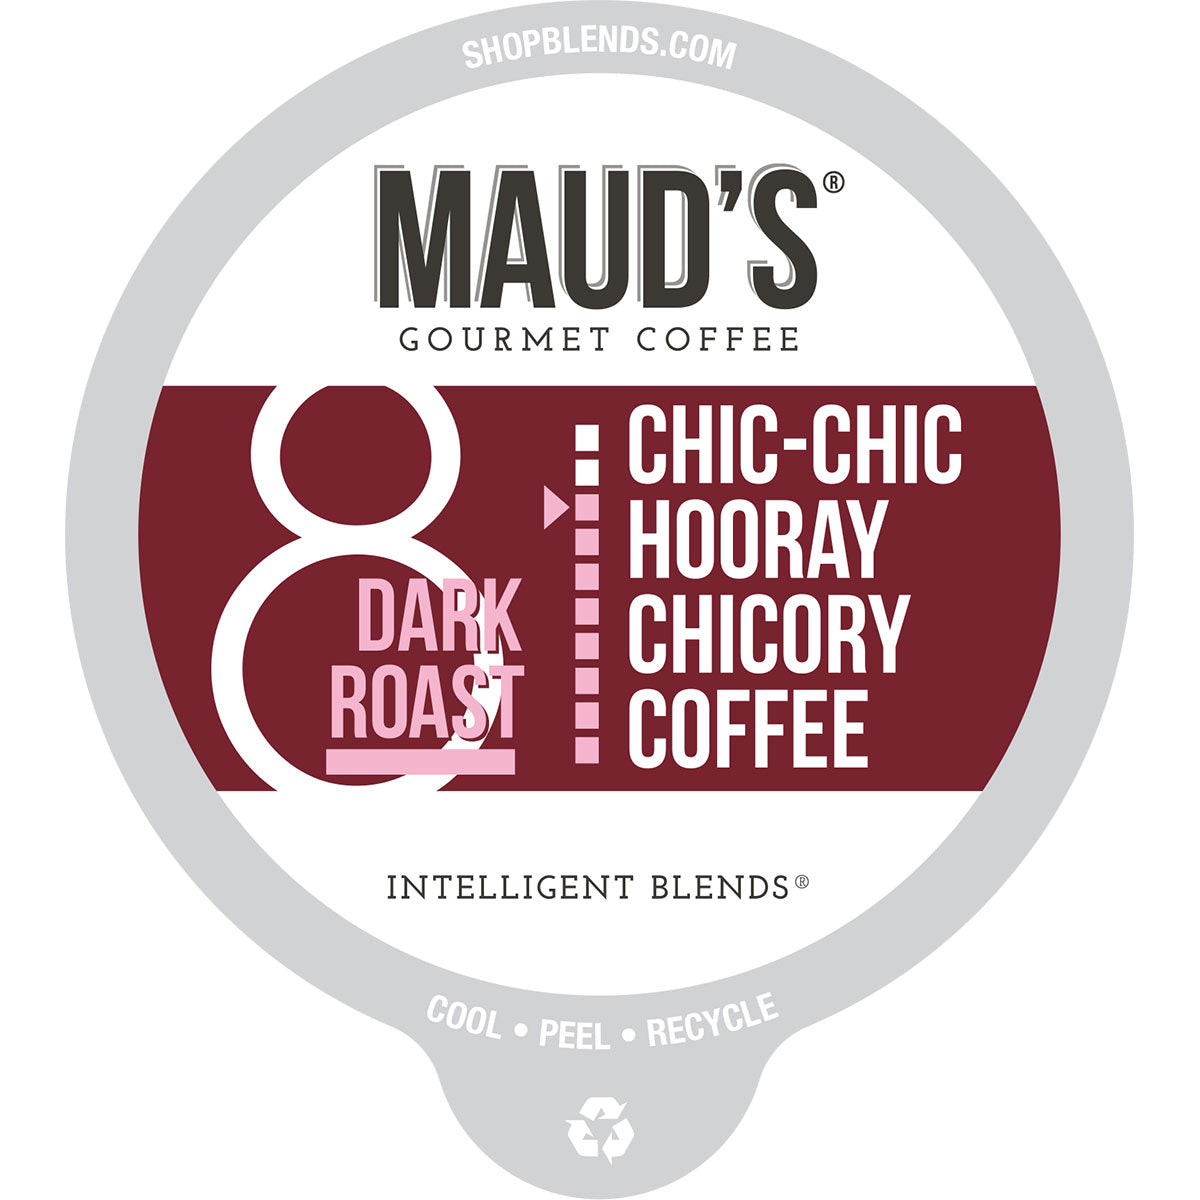 Maud's Chicory Dark Roast Coffee Pods (Chic-Chic Hooray Chicory) - 18ct